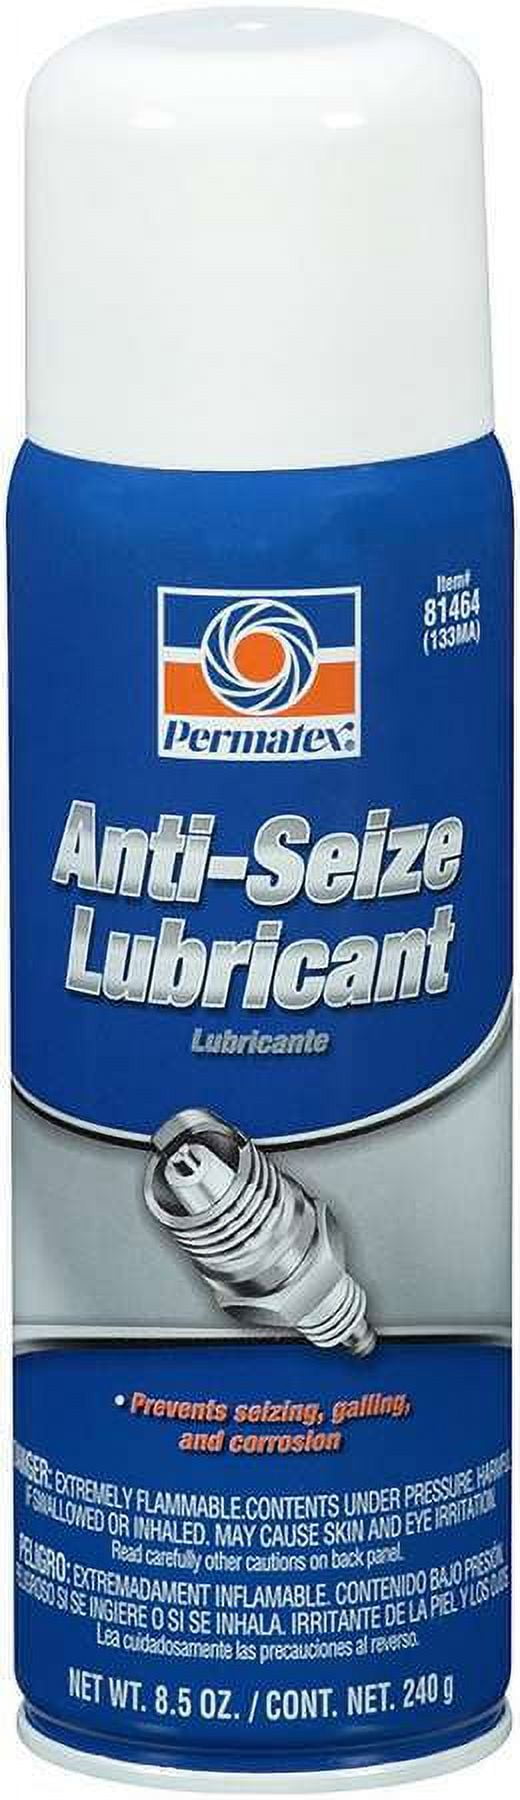 Permatex 80075 Chain Lube, 5 oz. aerosol can, Aerosol Can